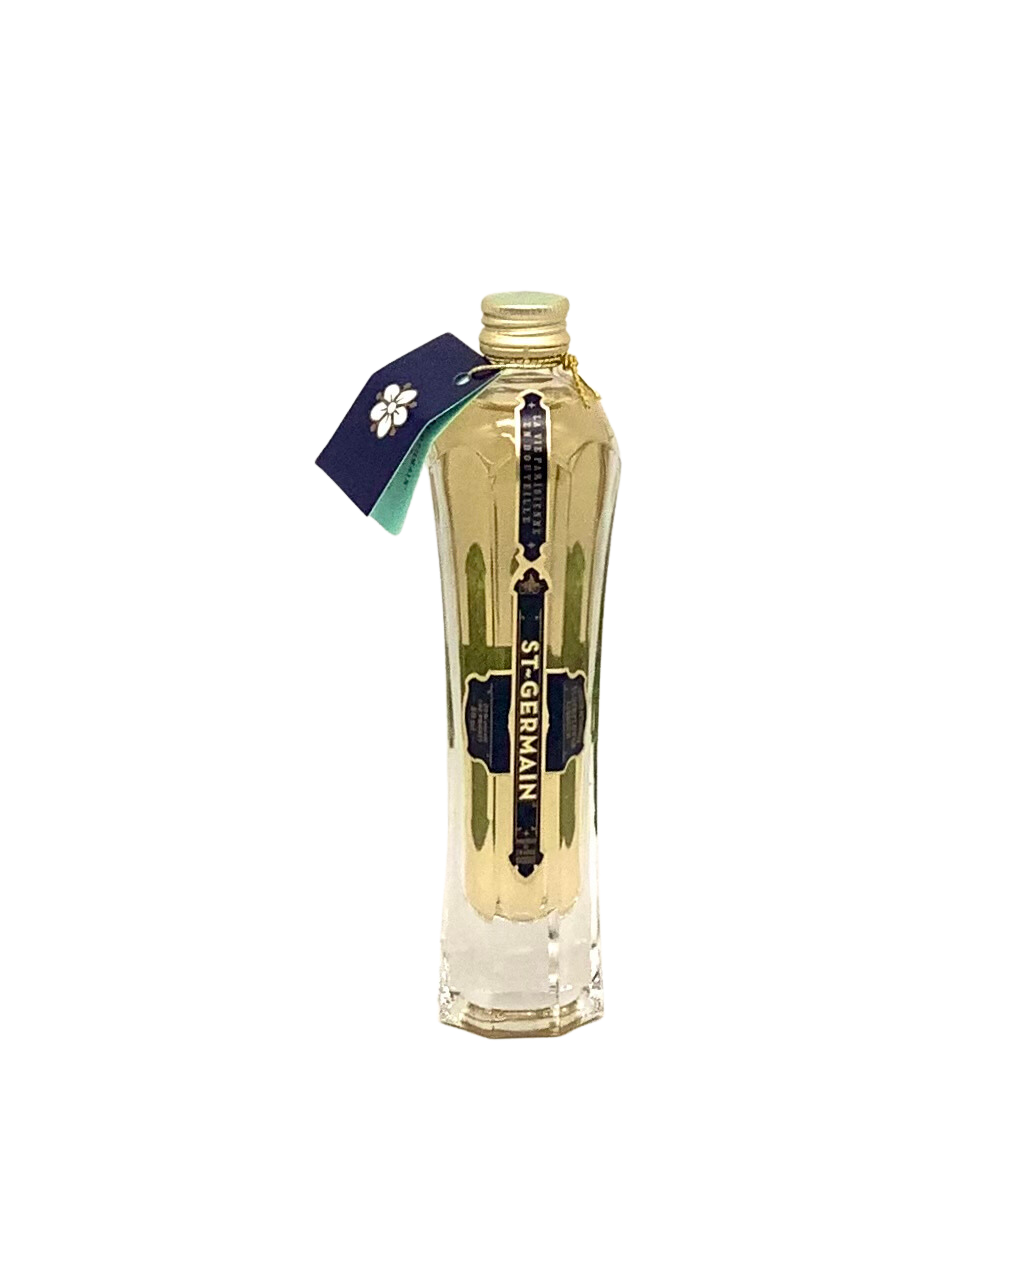 St-Germain Elderflower Liqueur (50 ml)